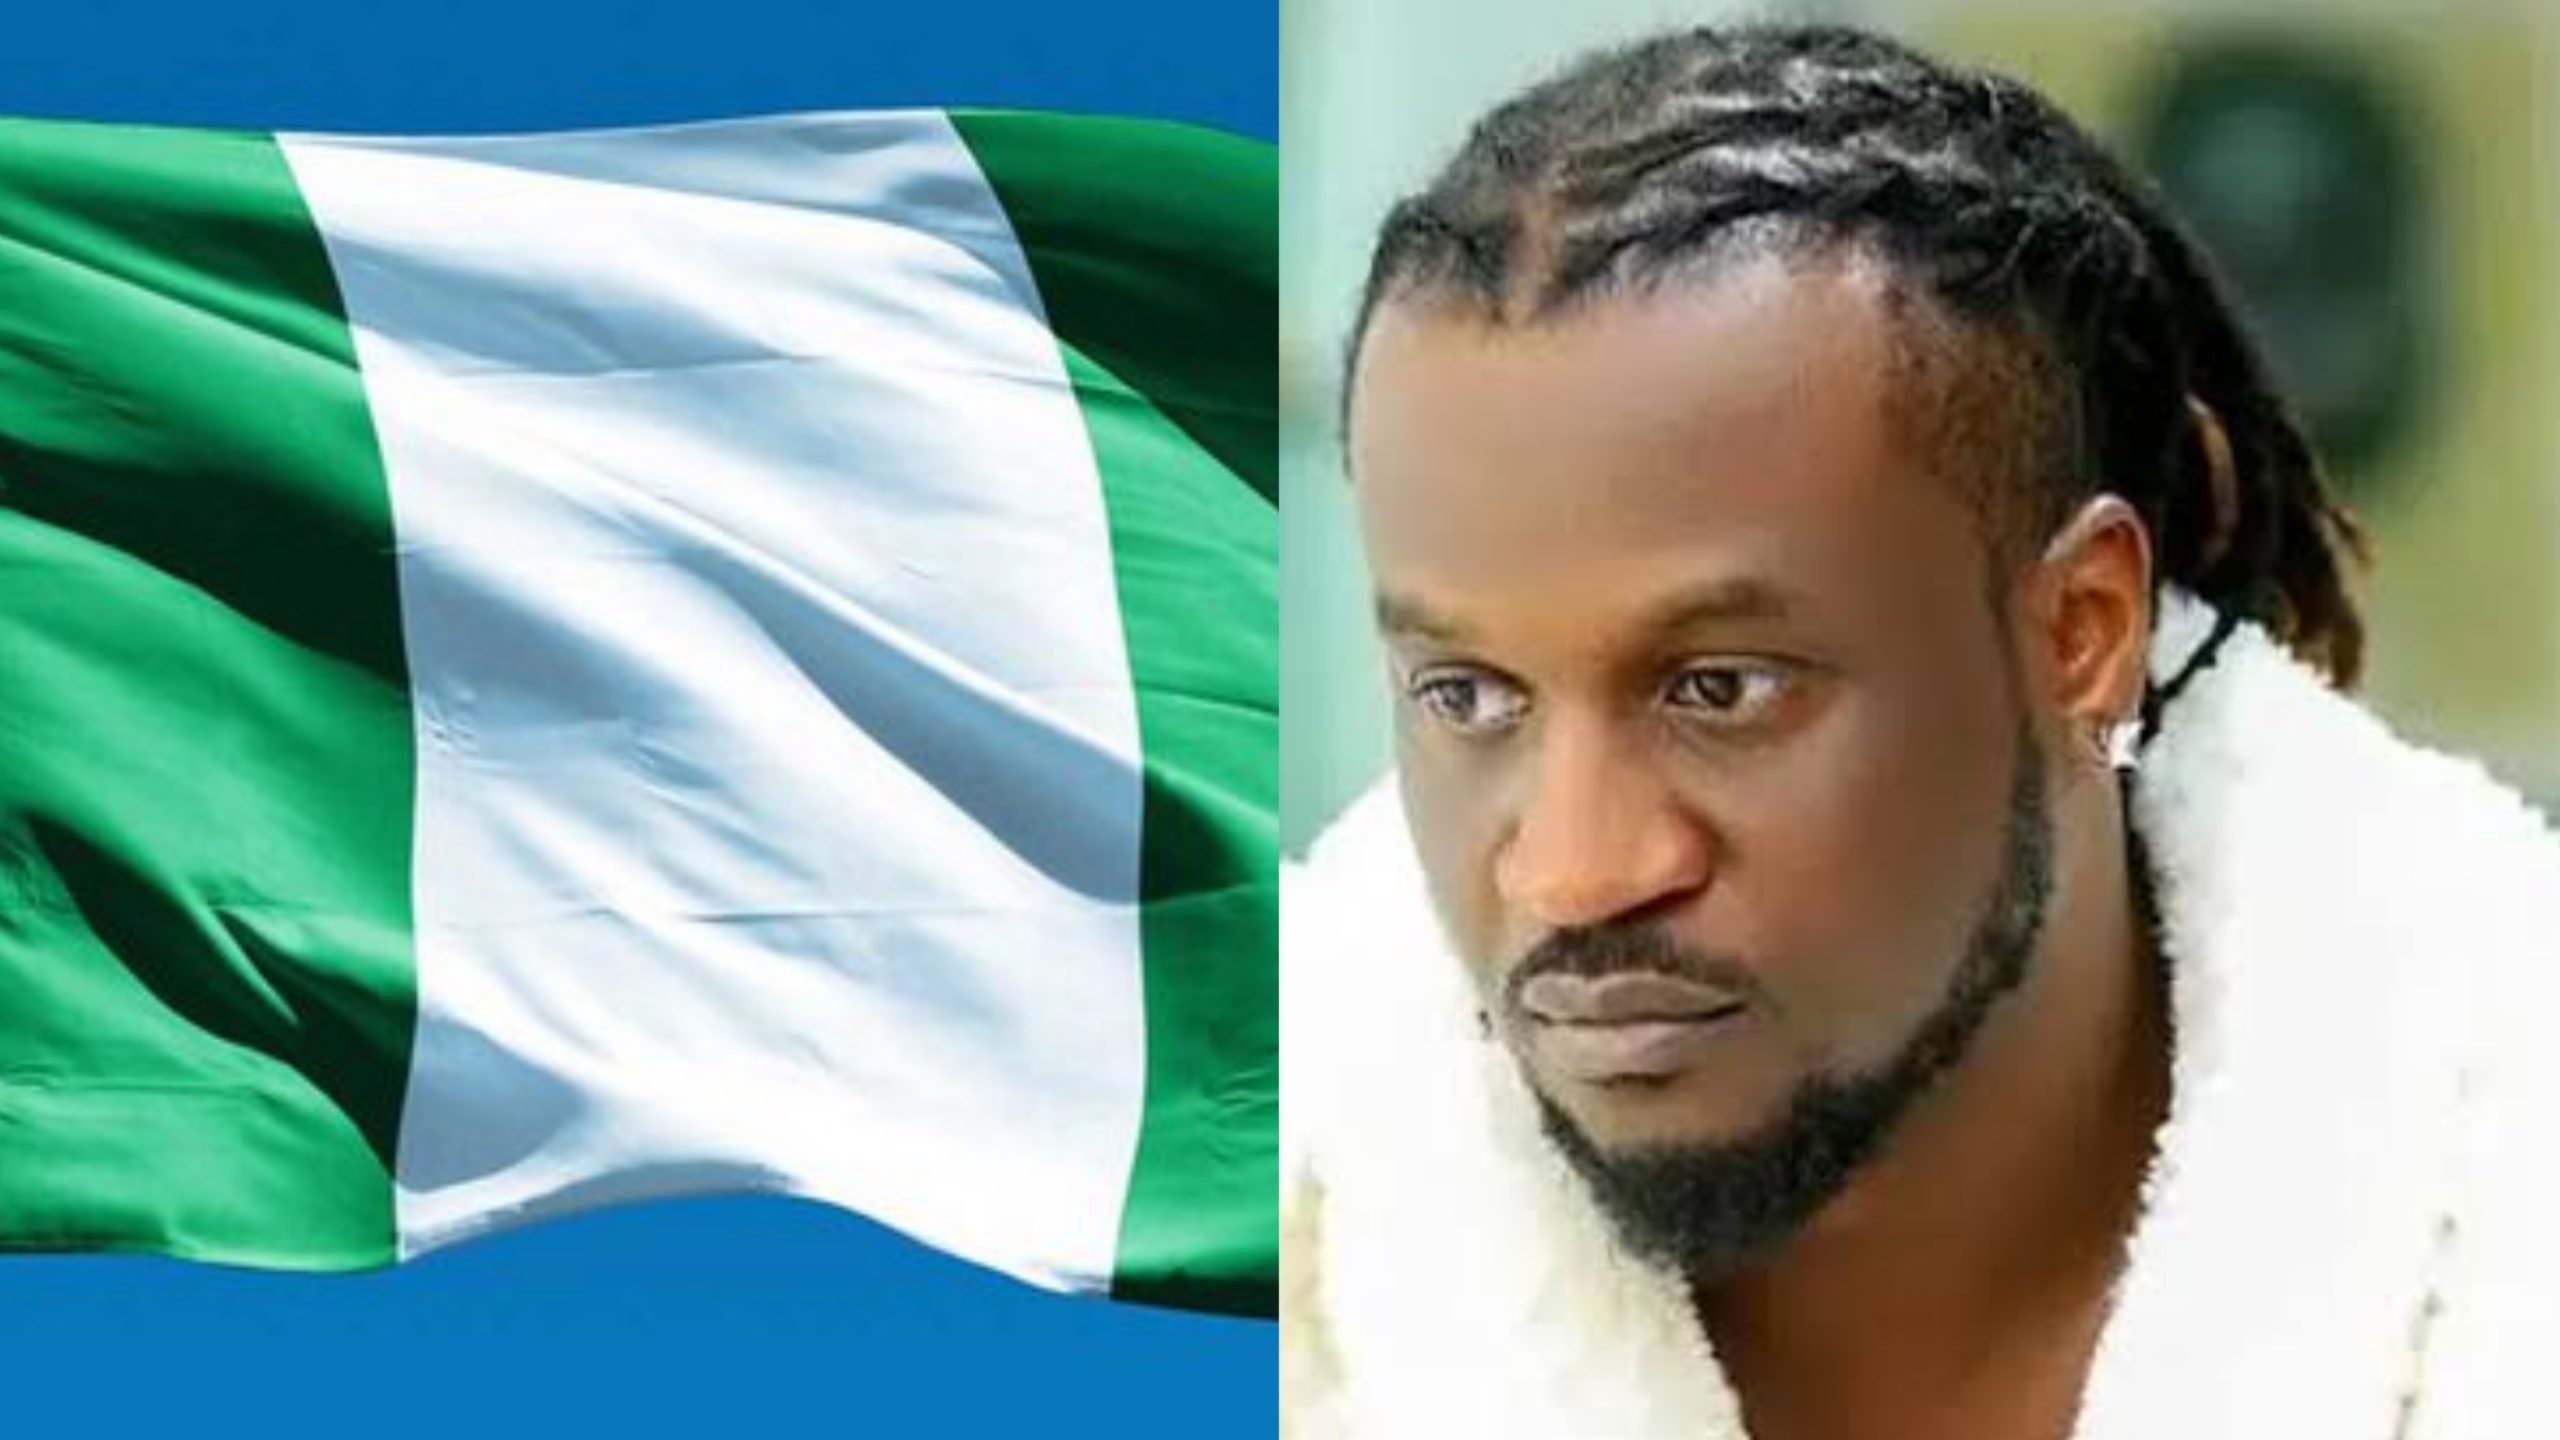 "Elders are leaders of tomorrow in this Nigeria" – Paul Okoye cries out